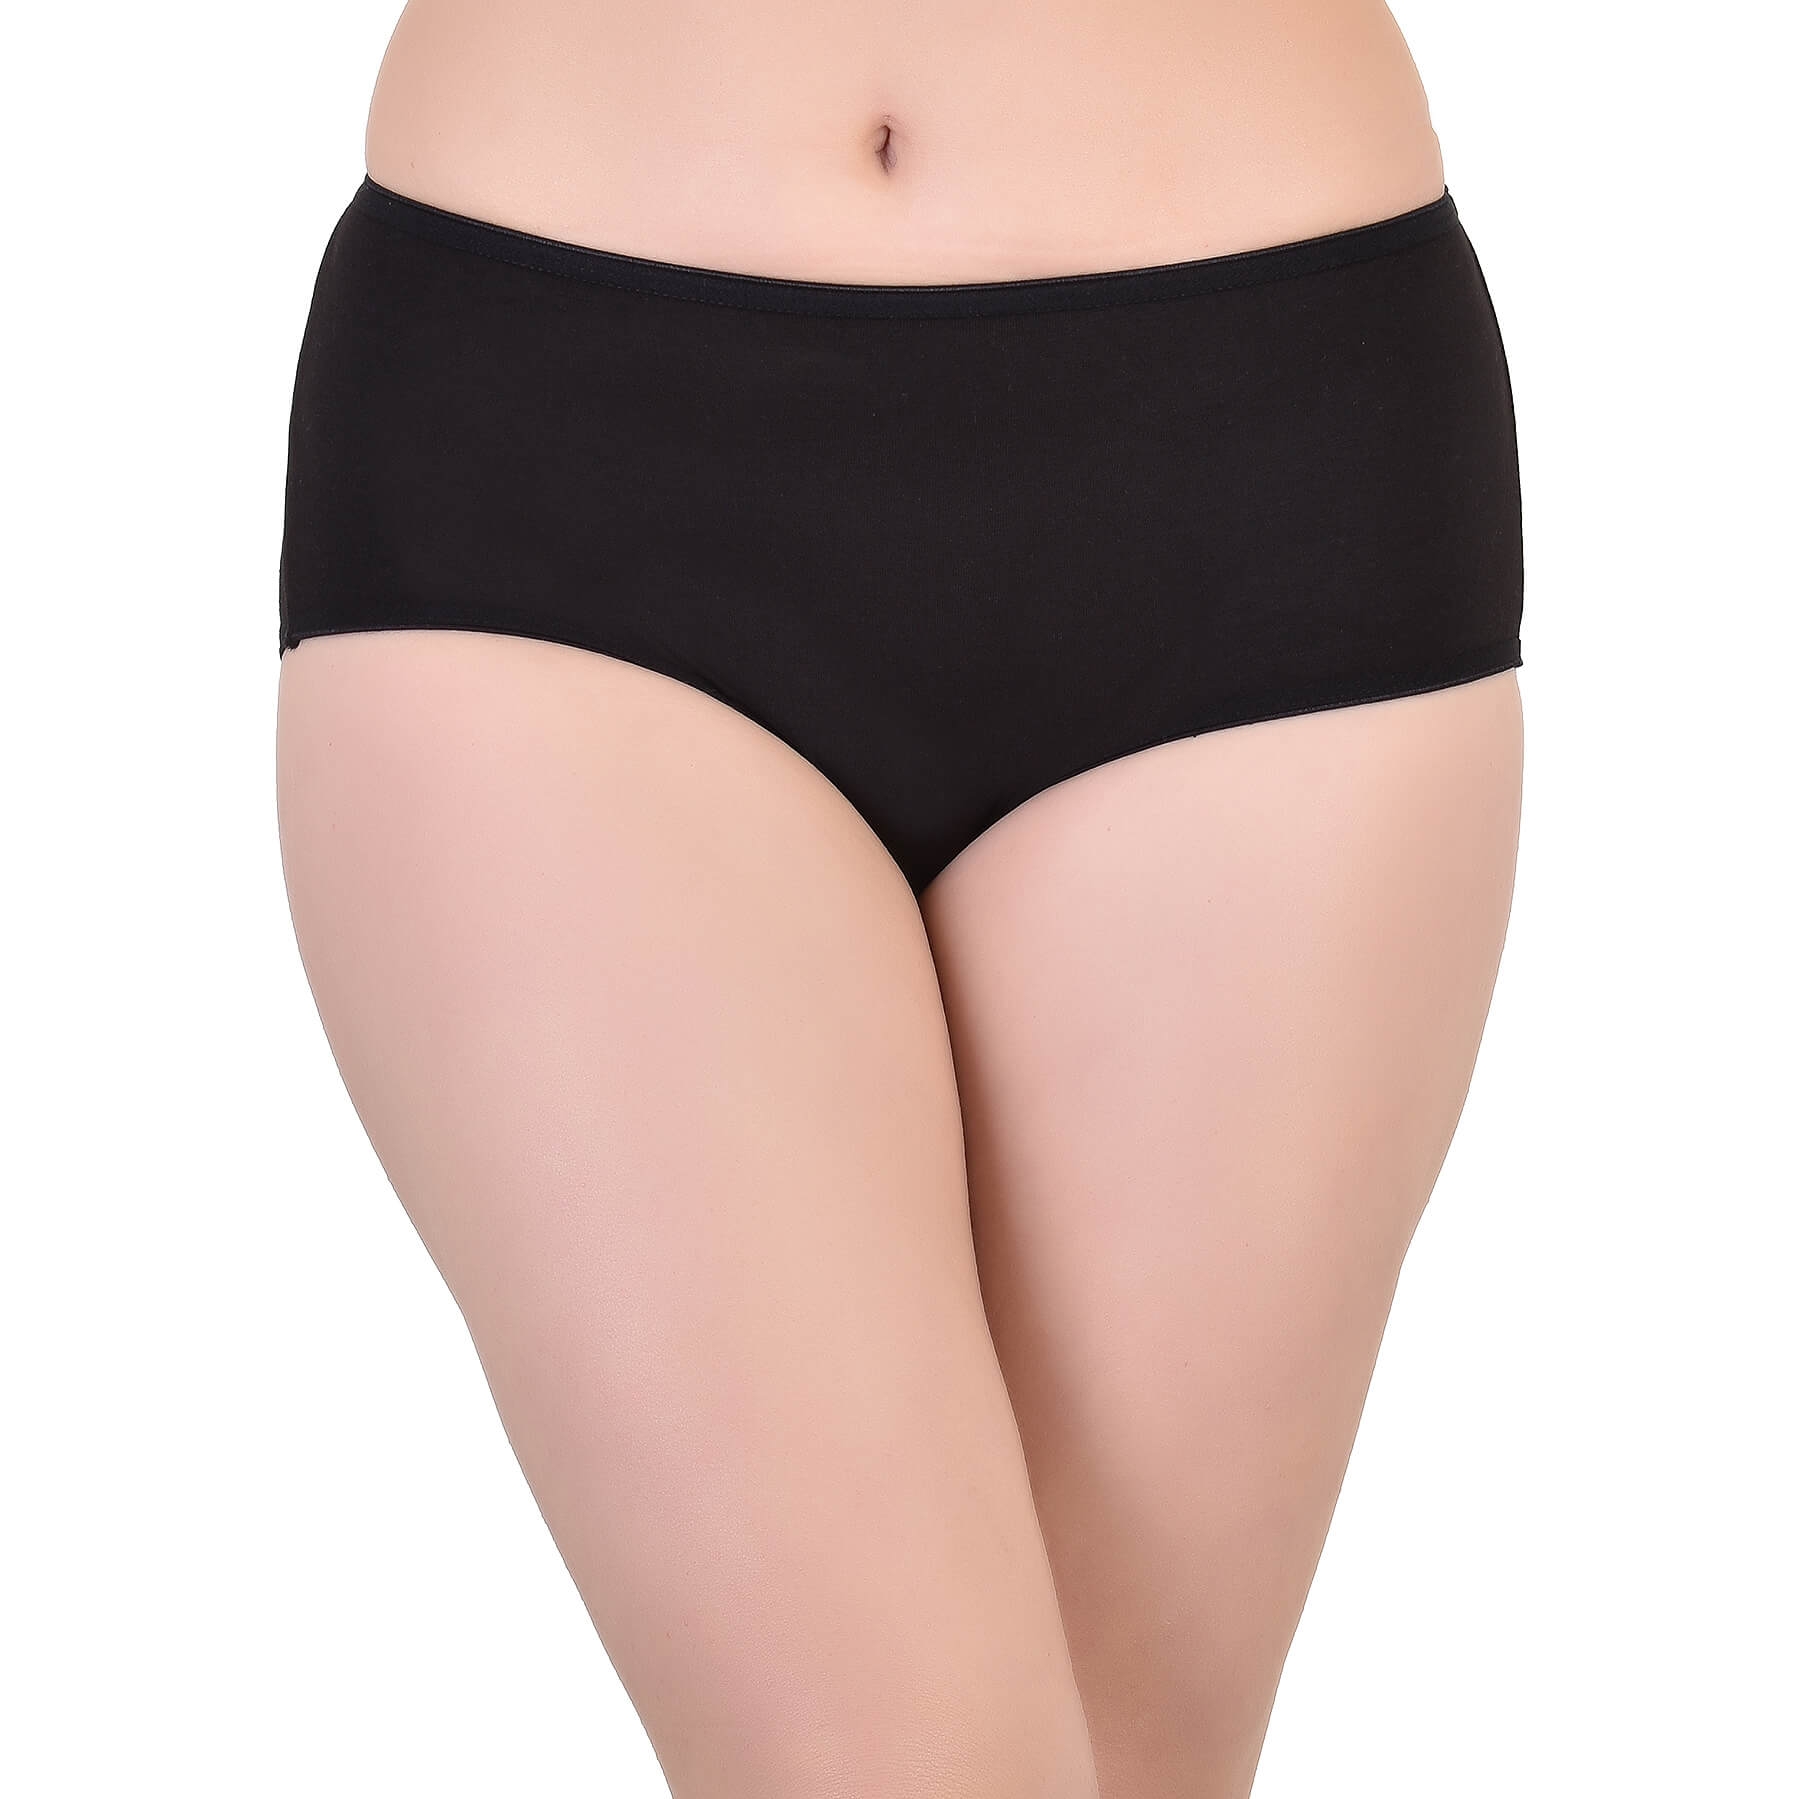 Bamboo Fabric Women Underwear, Midi Panties Peach/Black 2PCS